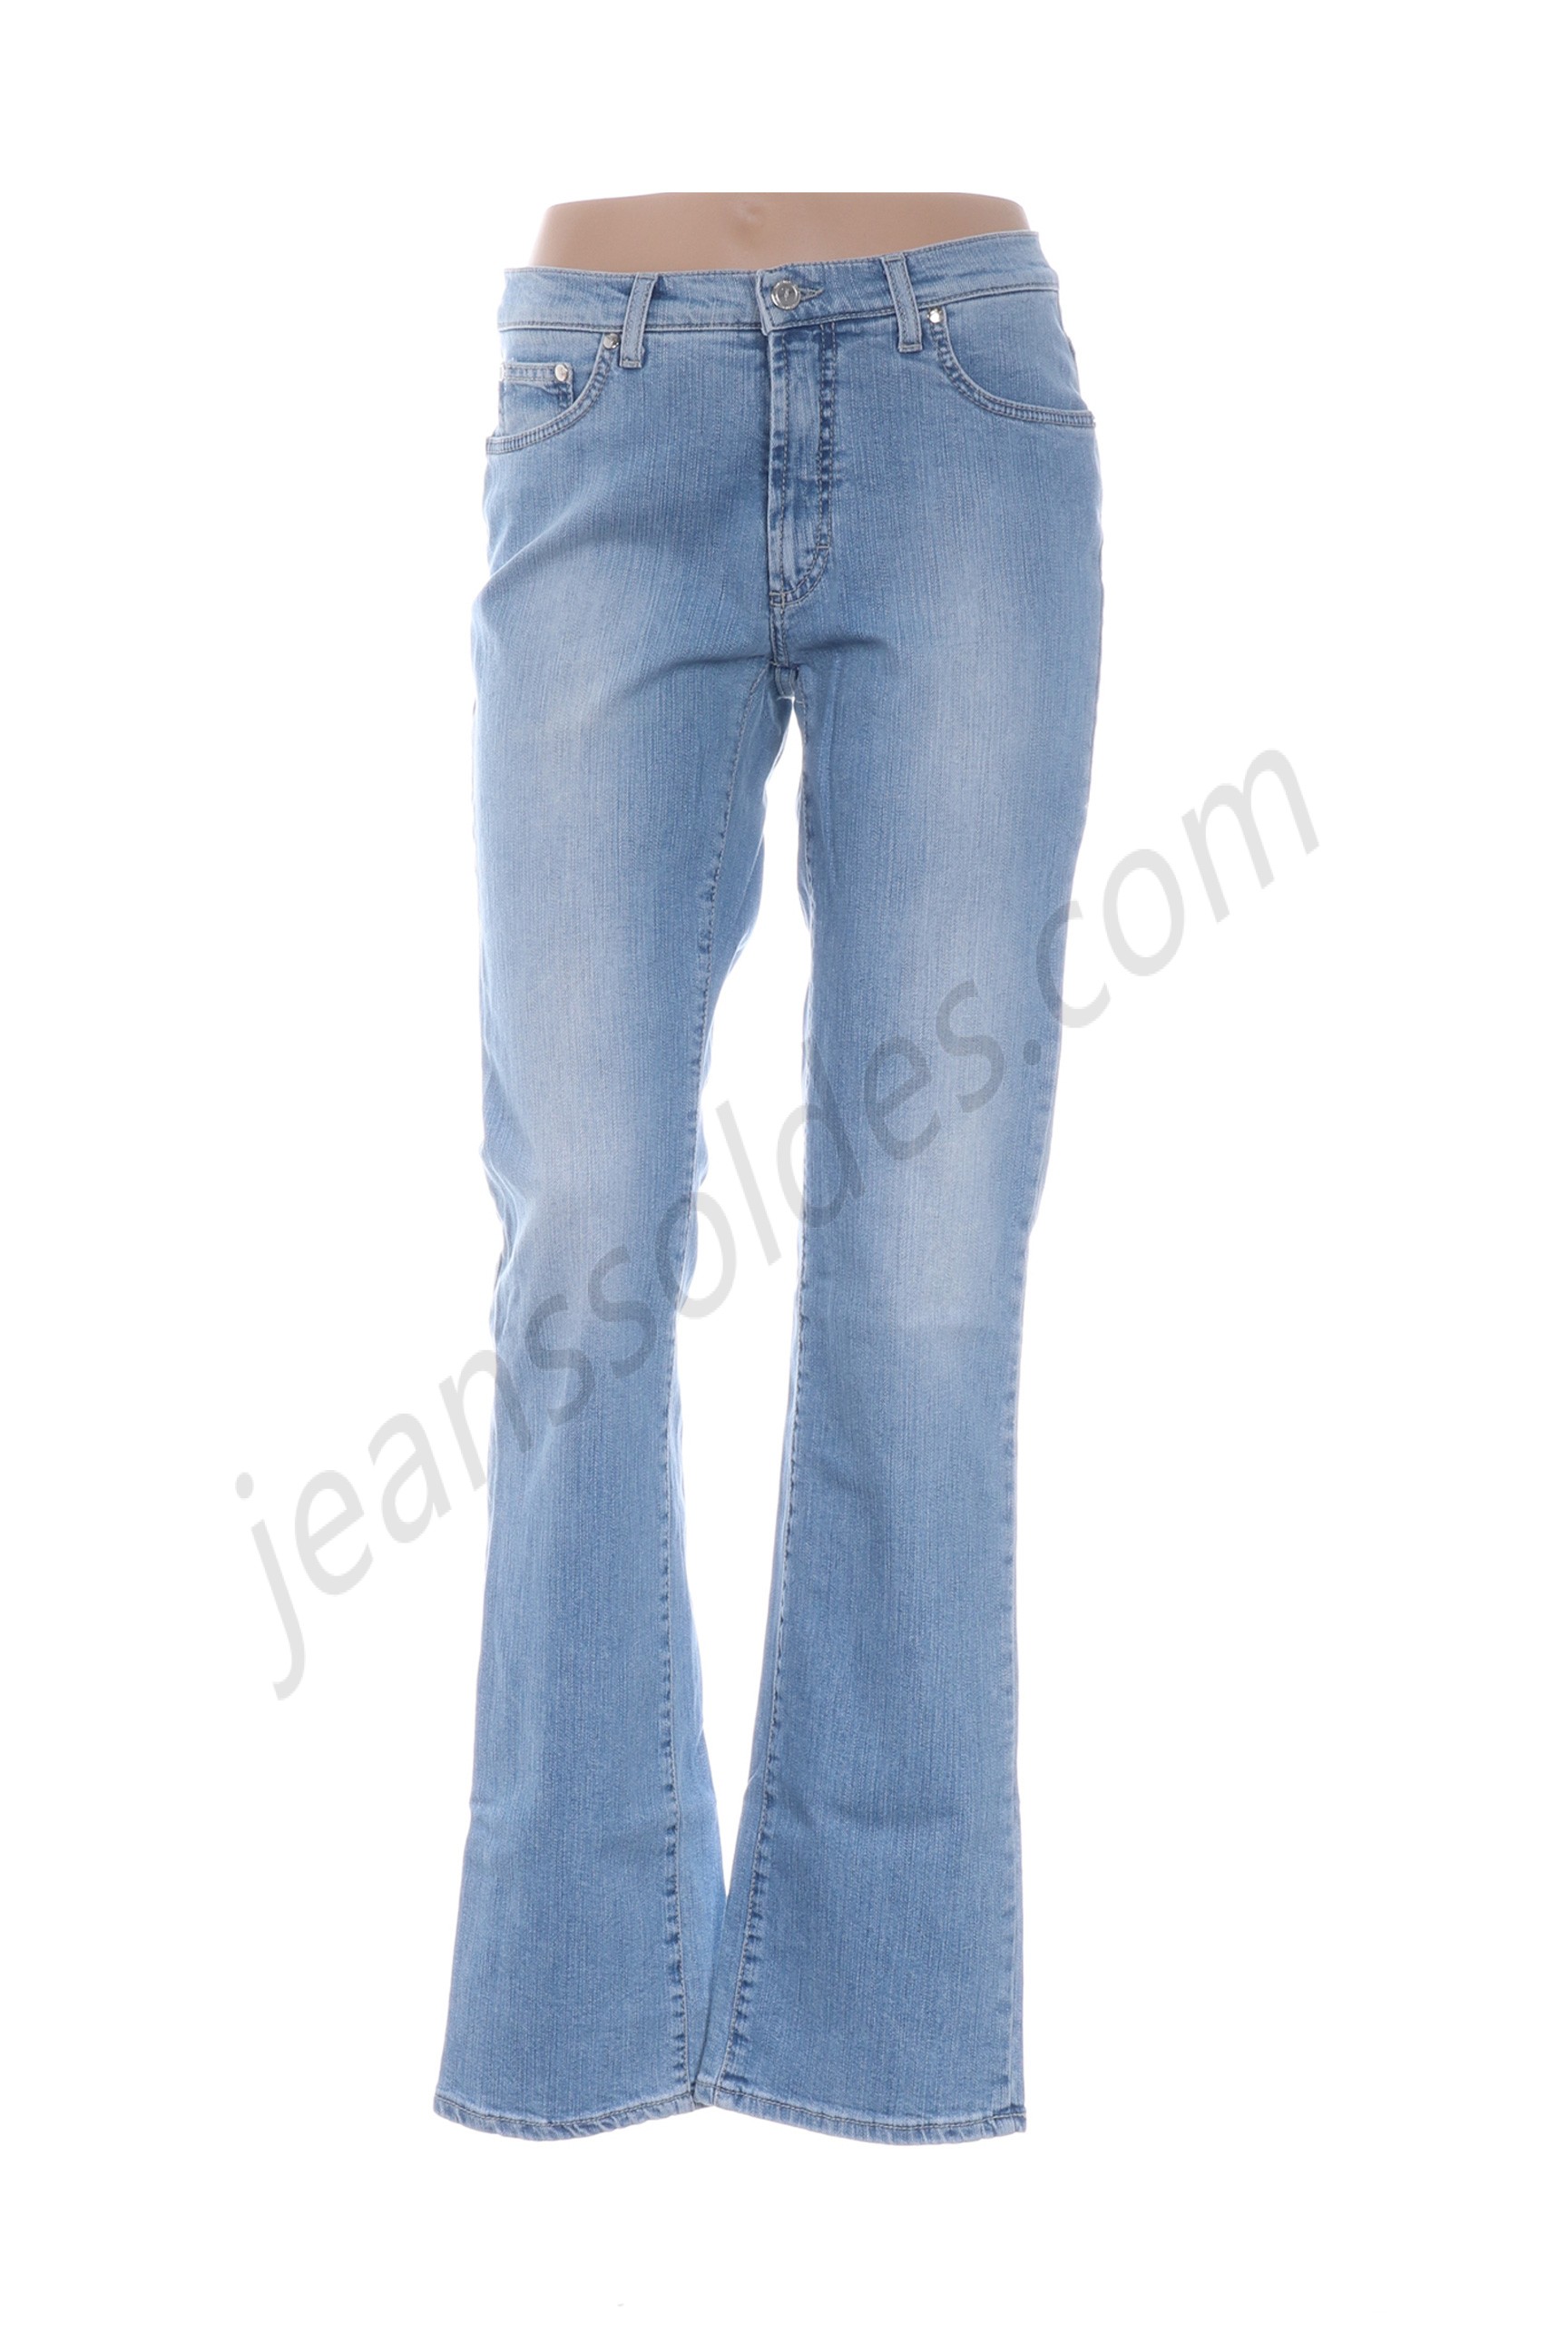 trussardi jeans-Jeans coupe slim prix d’amis - trussardi jeans-Jeans coupe slim prix d’amis